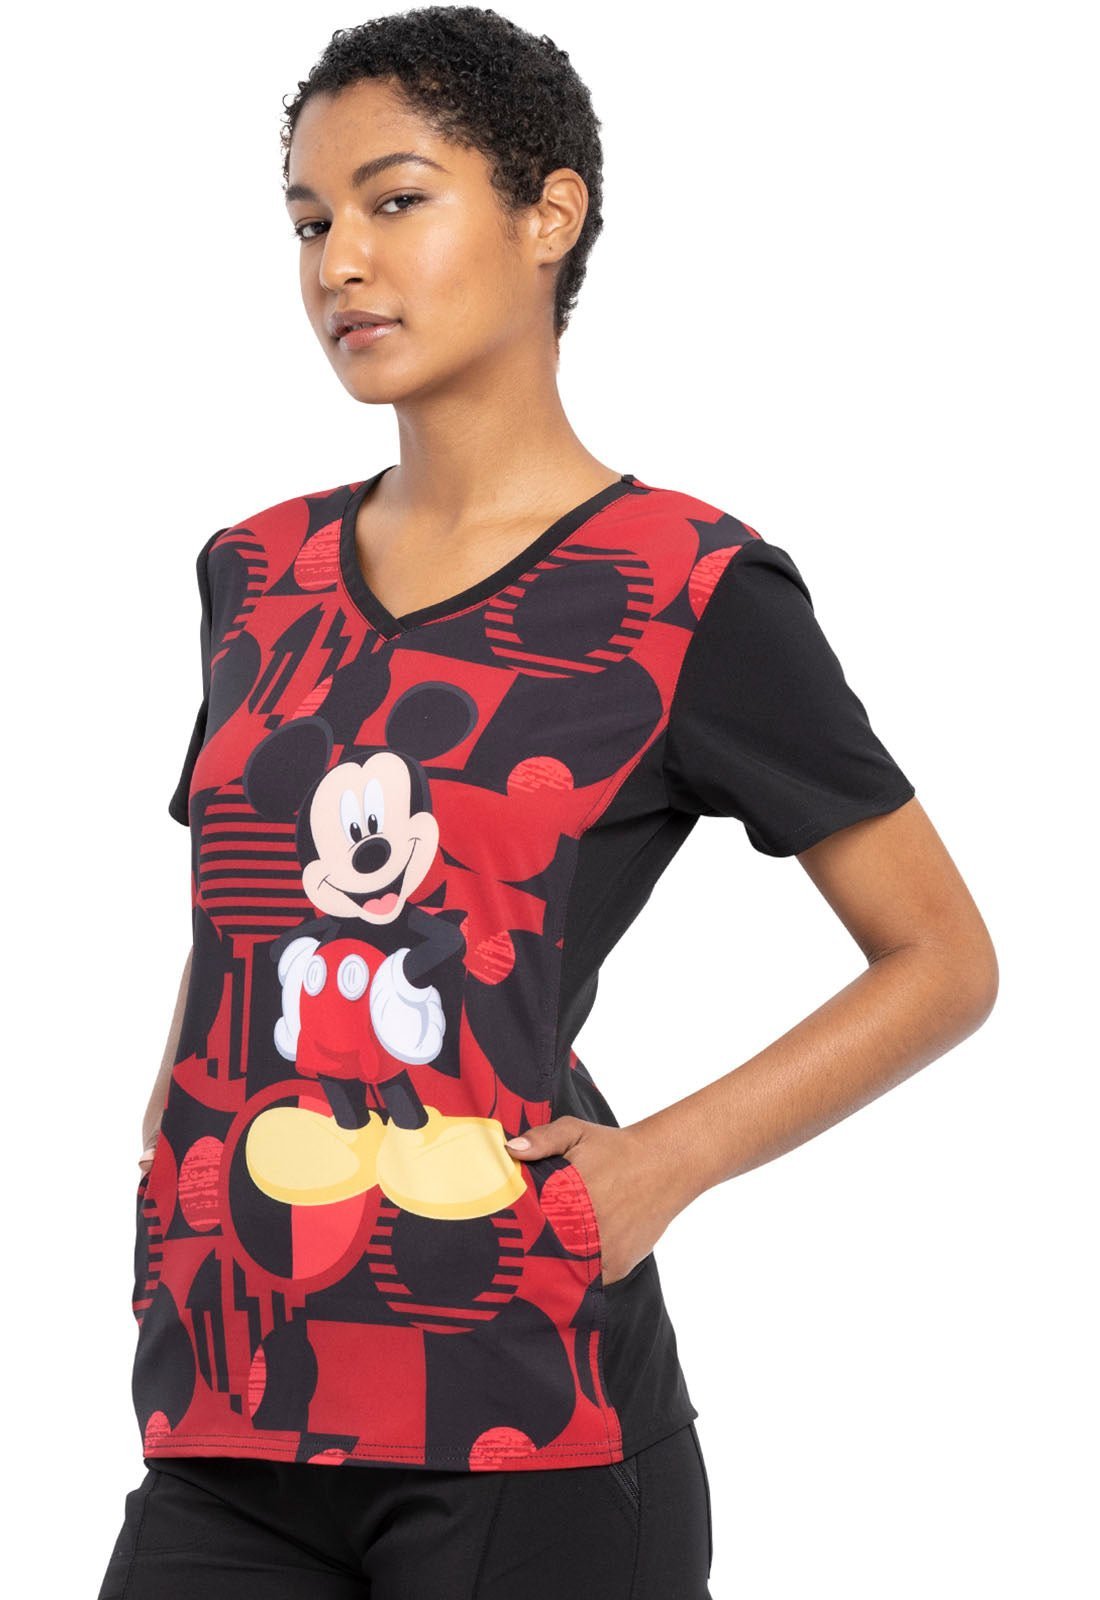 Mickey Mouse Tooniforms Disney V Neck Scrub Top TF677 MKYR - Scrubs Select